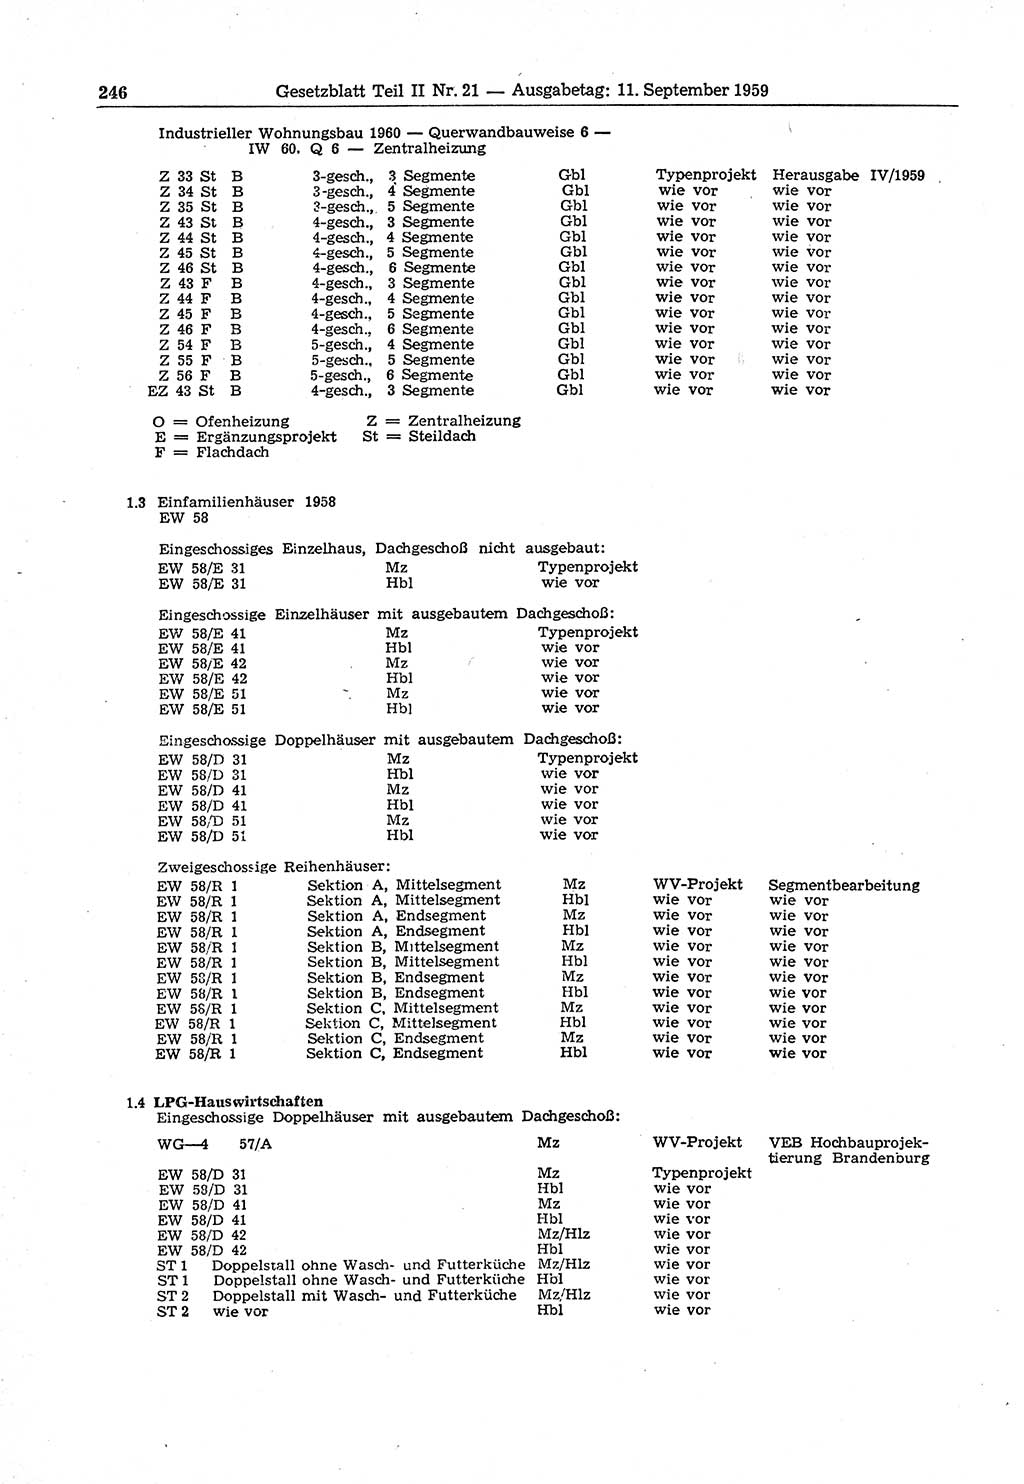 Gesetzblatt (GBl.) der Deutschen Demokratischen Republik (DDR) Teil ⅠⅠ 1959, Seite 246 (GBl. DDR ⅠⅠ 1959, S. 246)